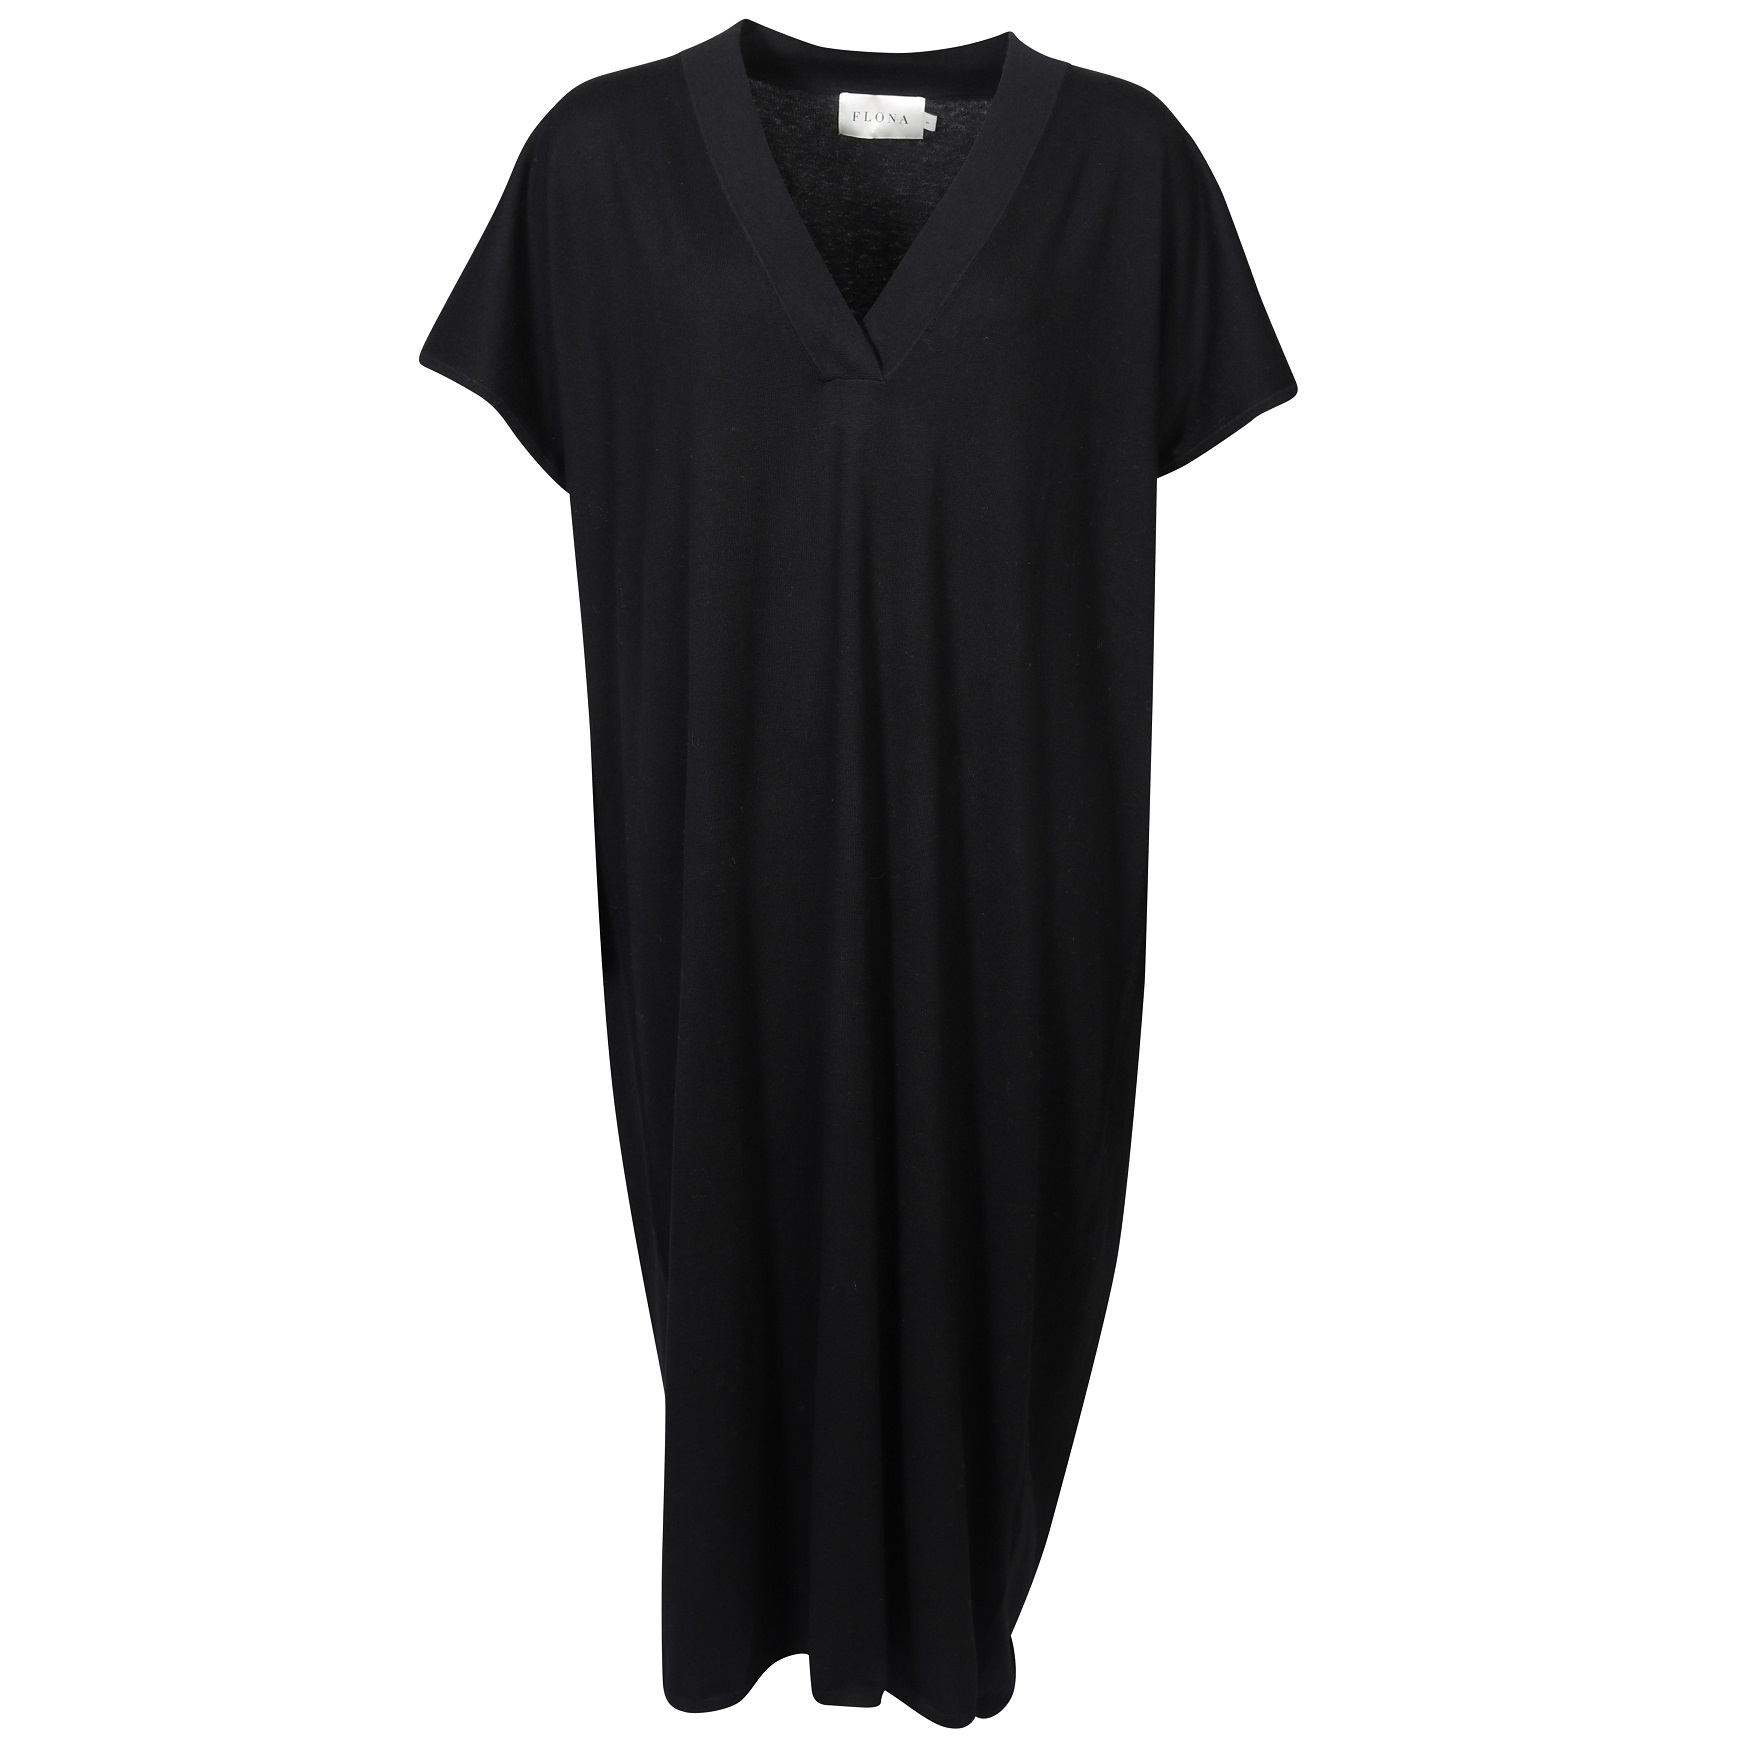 FLONA Knit Dress in Black